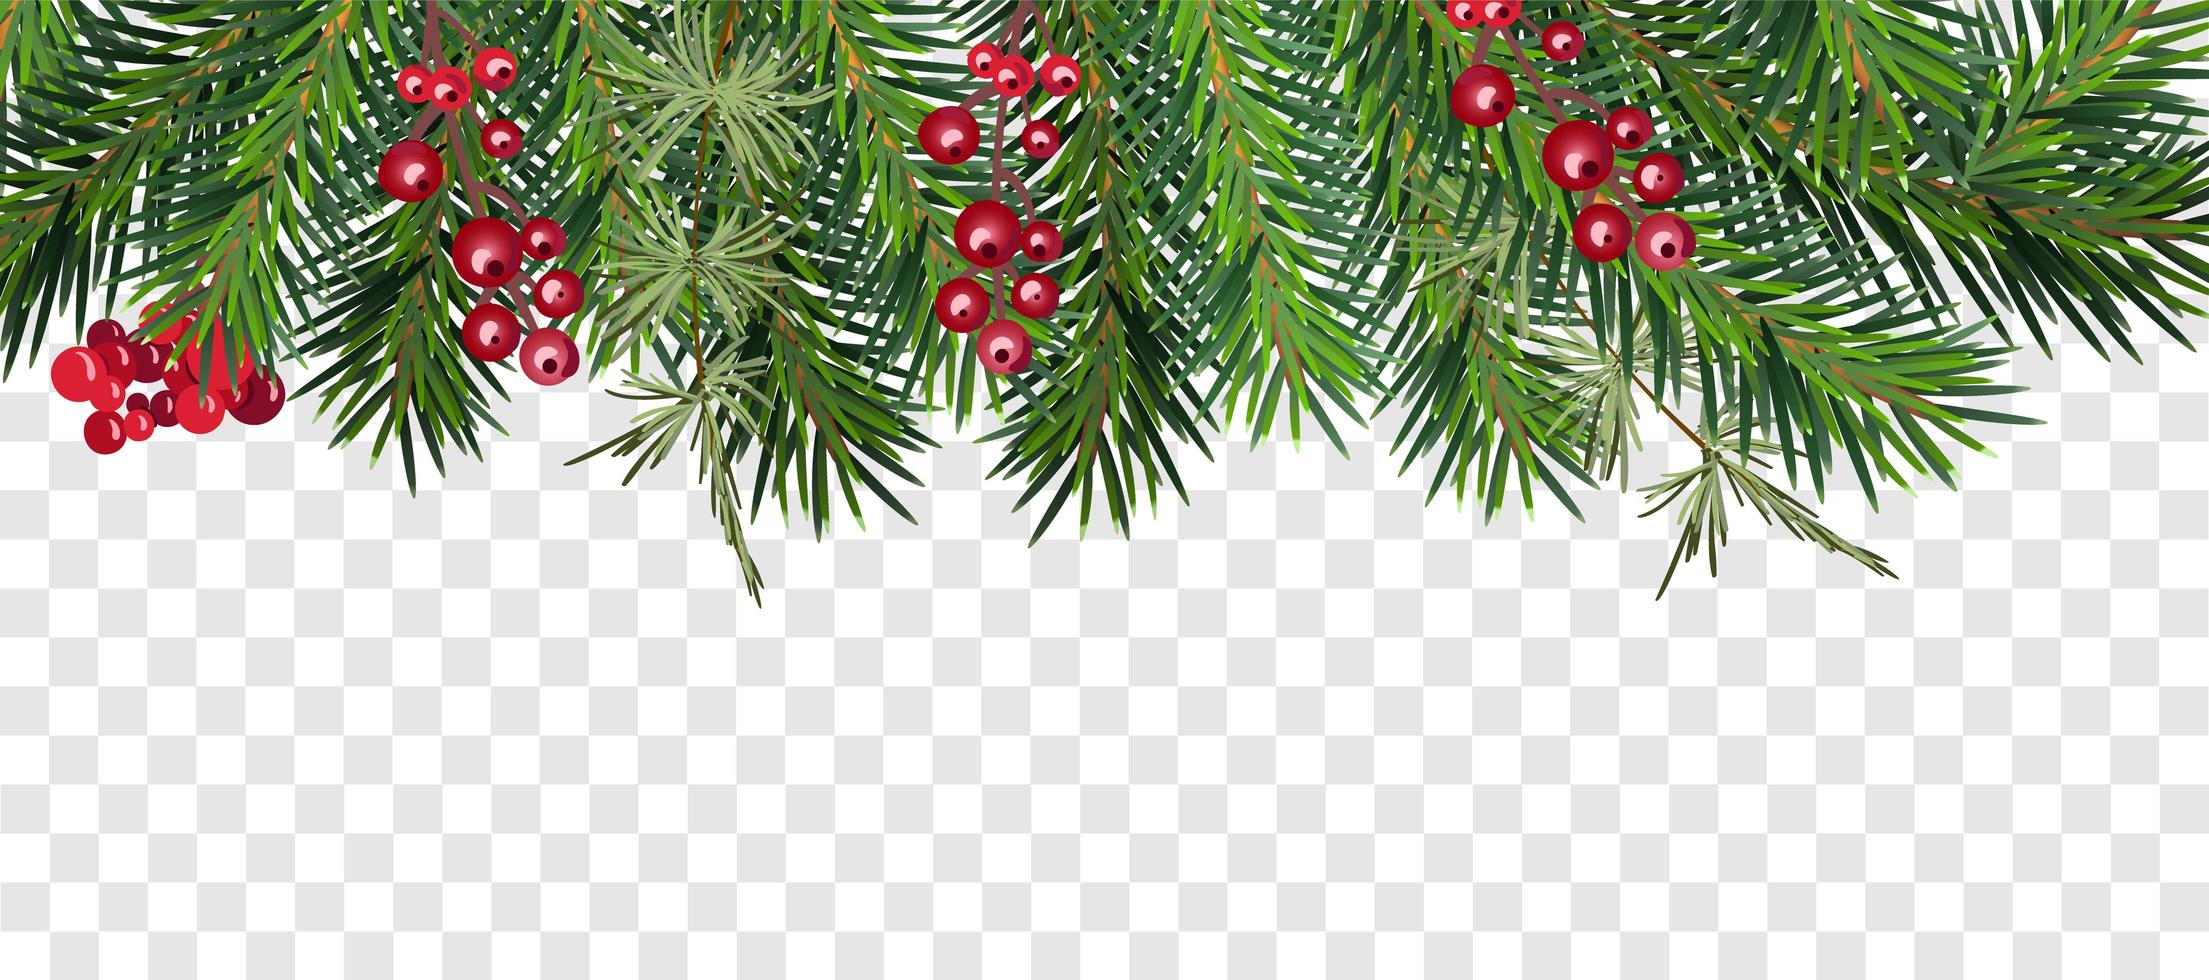 Weihnachtsbaum Girlande und Beeren Top Frame vektor